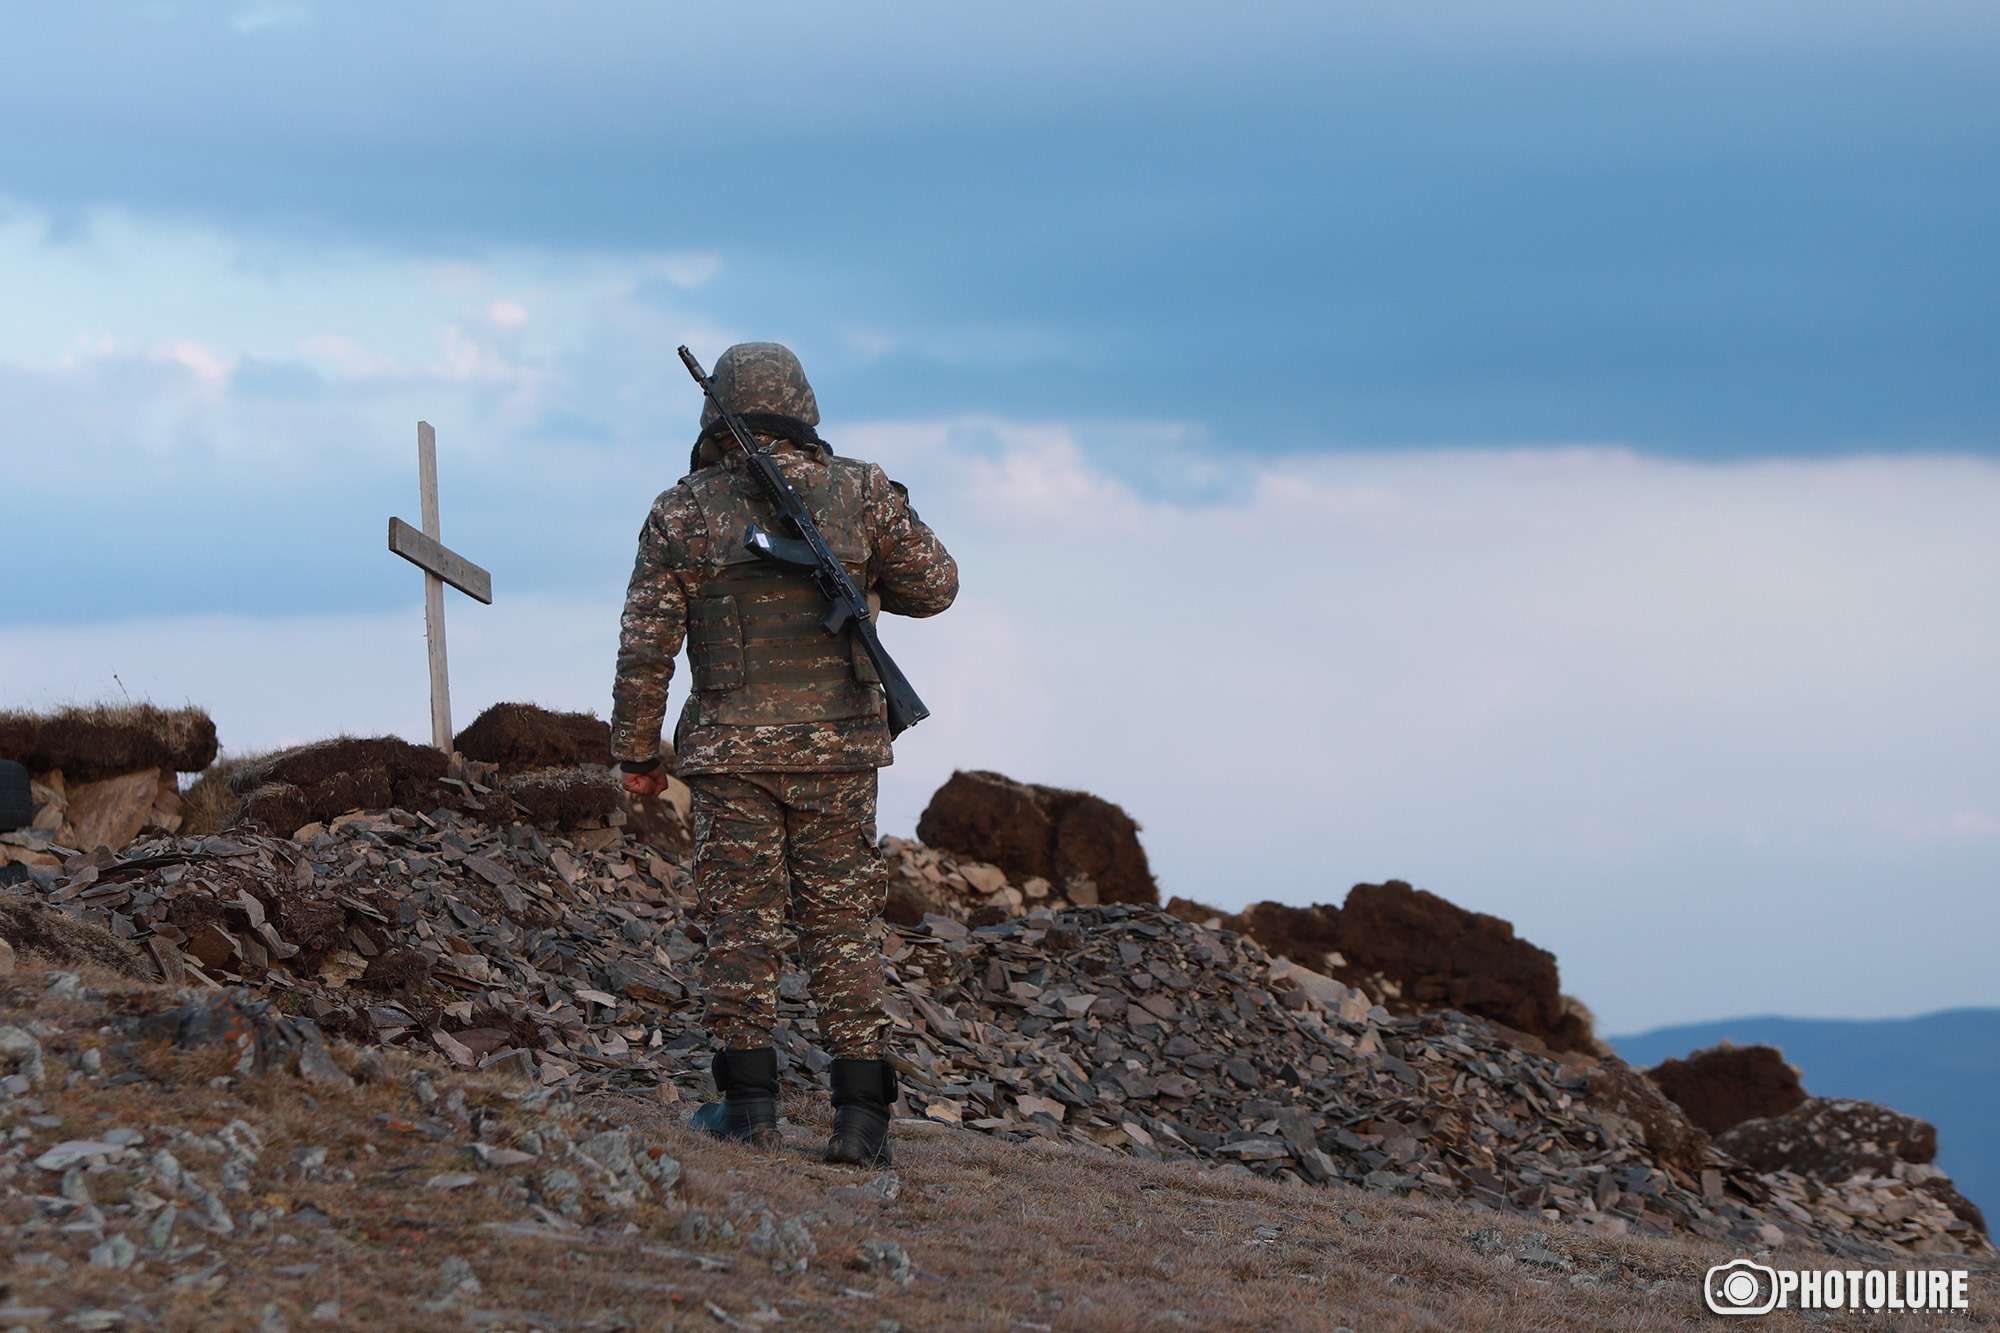 Հակառակորդի կրակոցից հայ զինծառայող է վիրավորվել, նրա վիճակը ծայրահեղ ծանր է․ ՊՆ